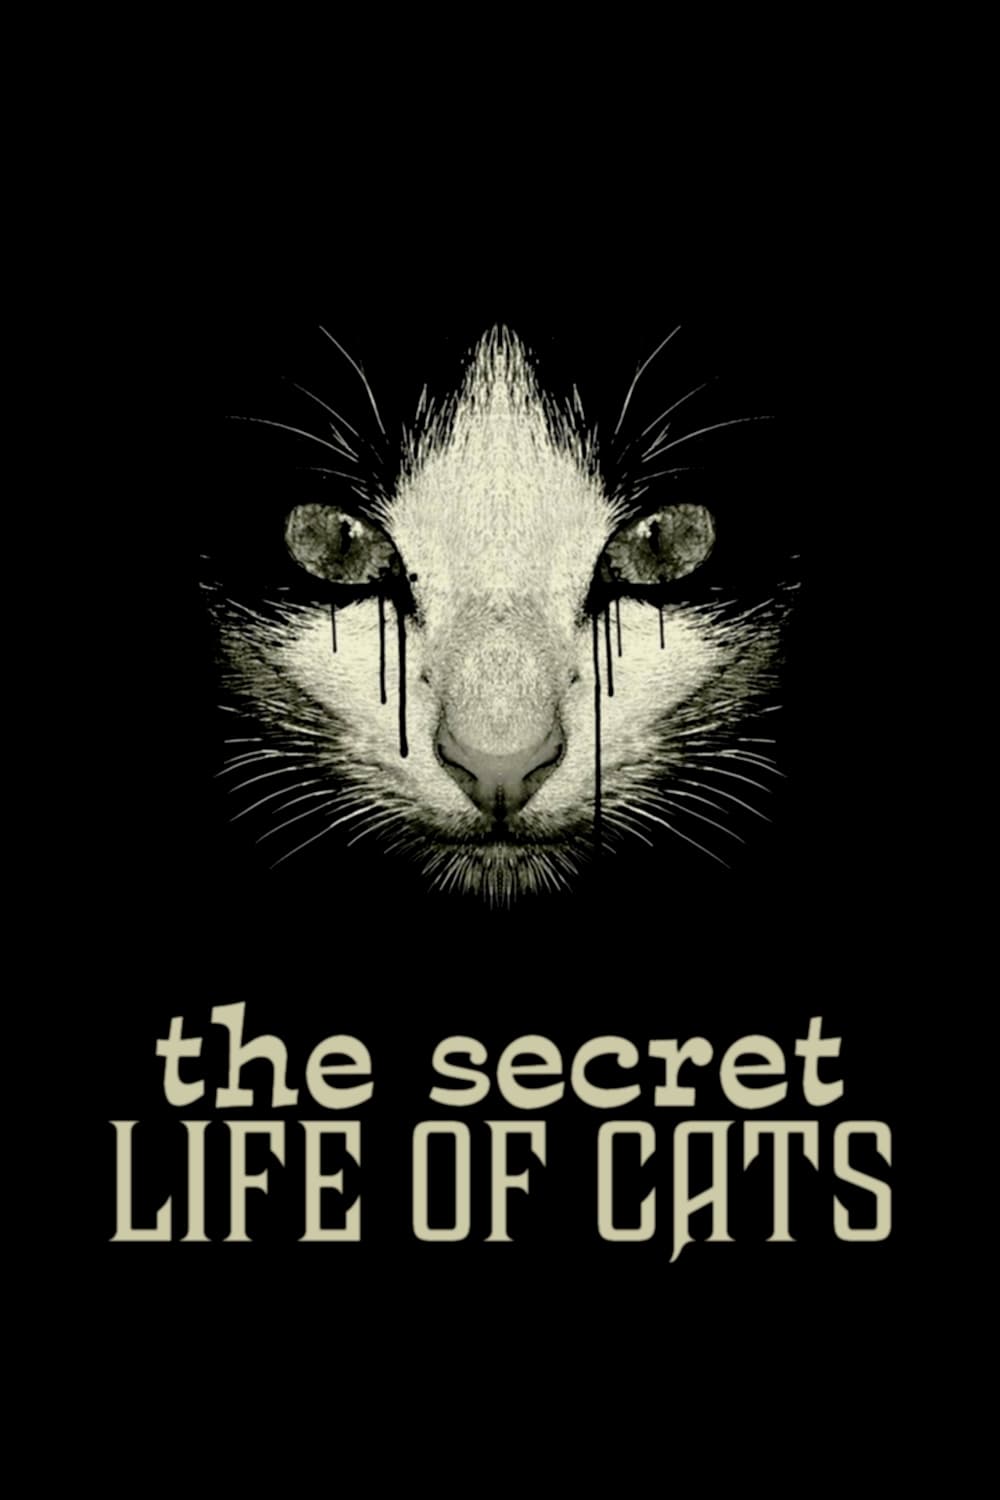 La vida secreta de los gatos